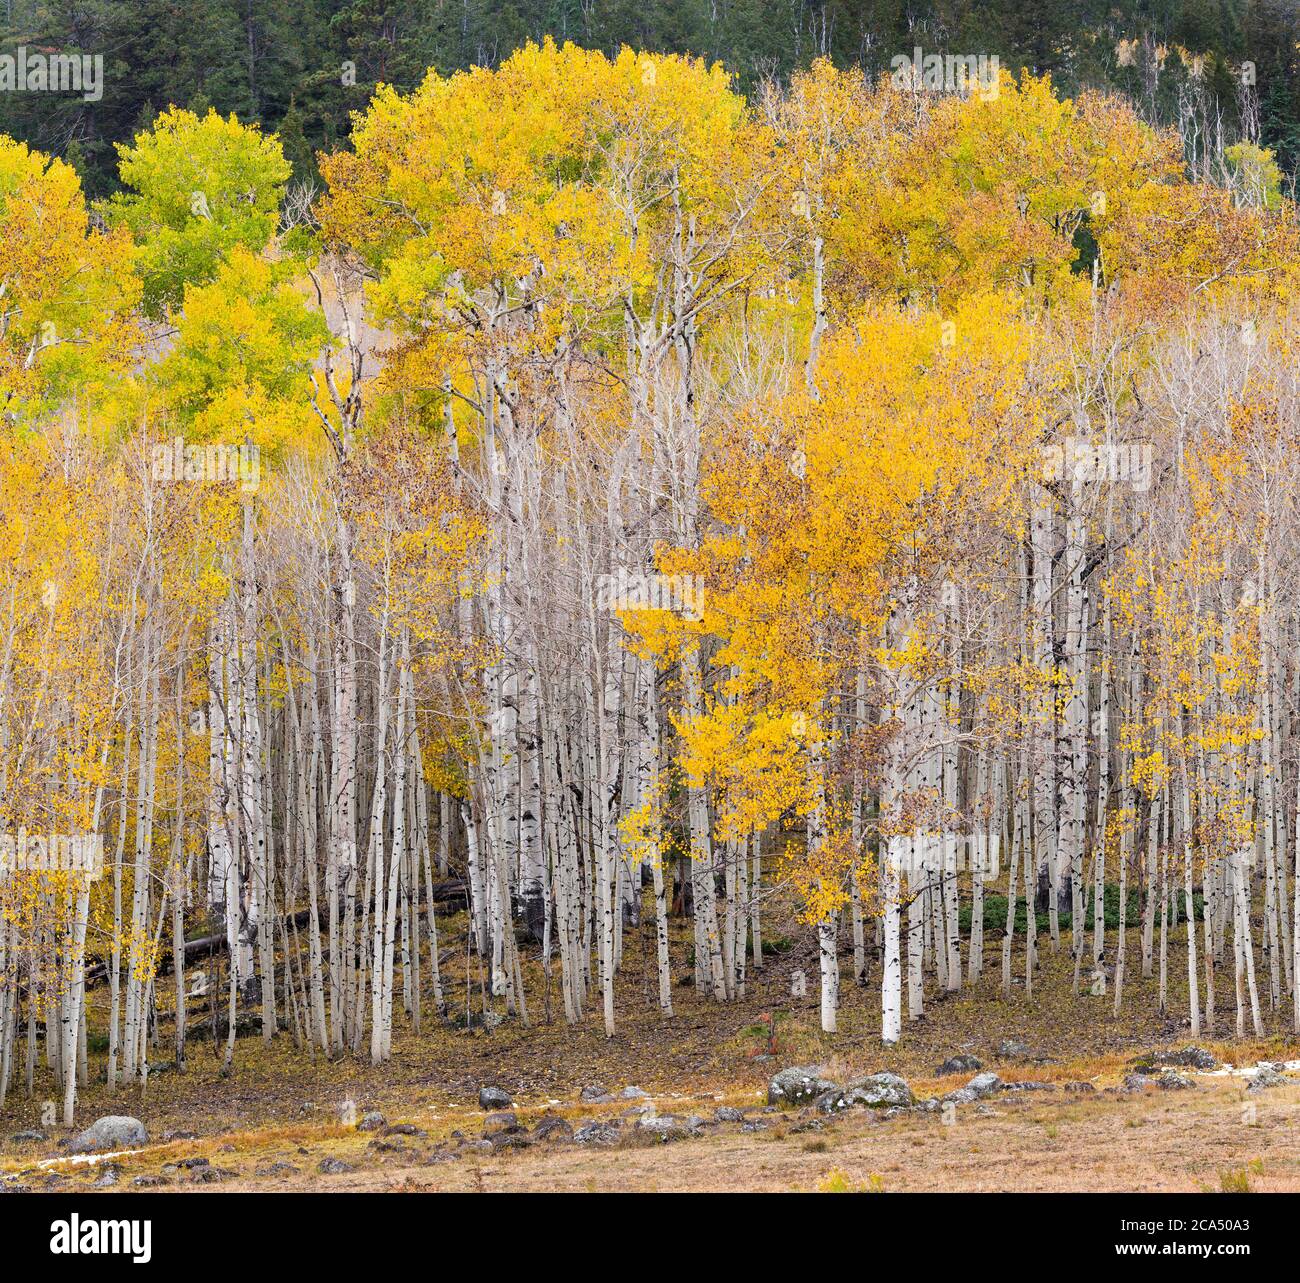 Vista de los álamos americanos (Populus tremuloides) en otoño, Boulder Mountain, Utah, Estados Unidos Foto de stock